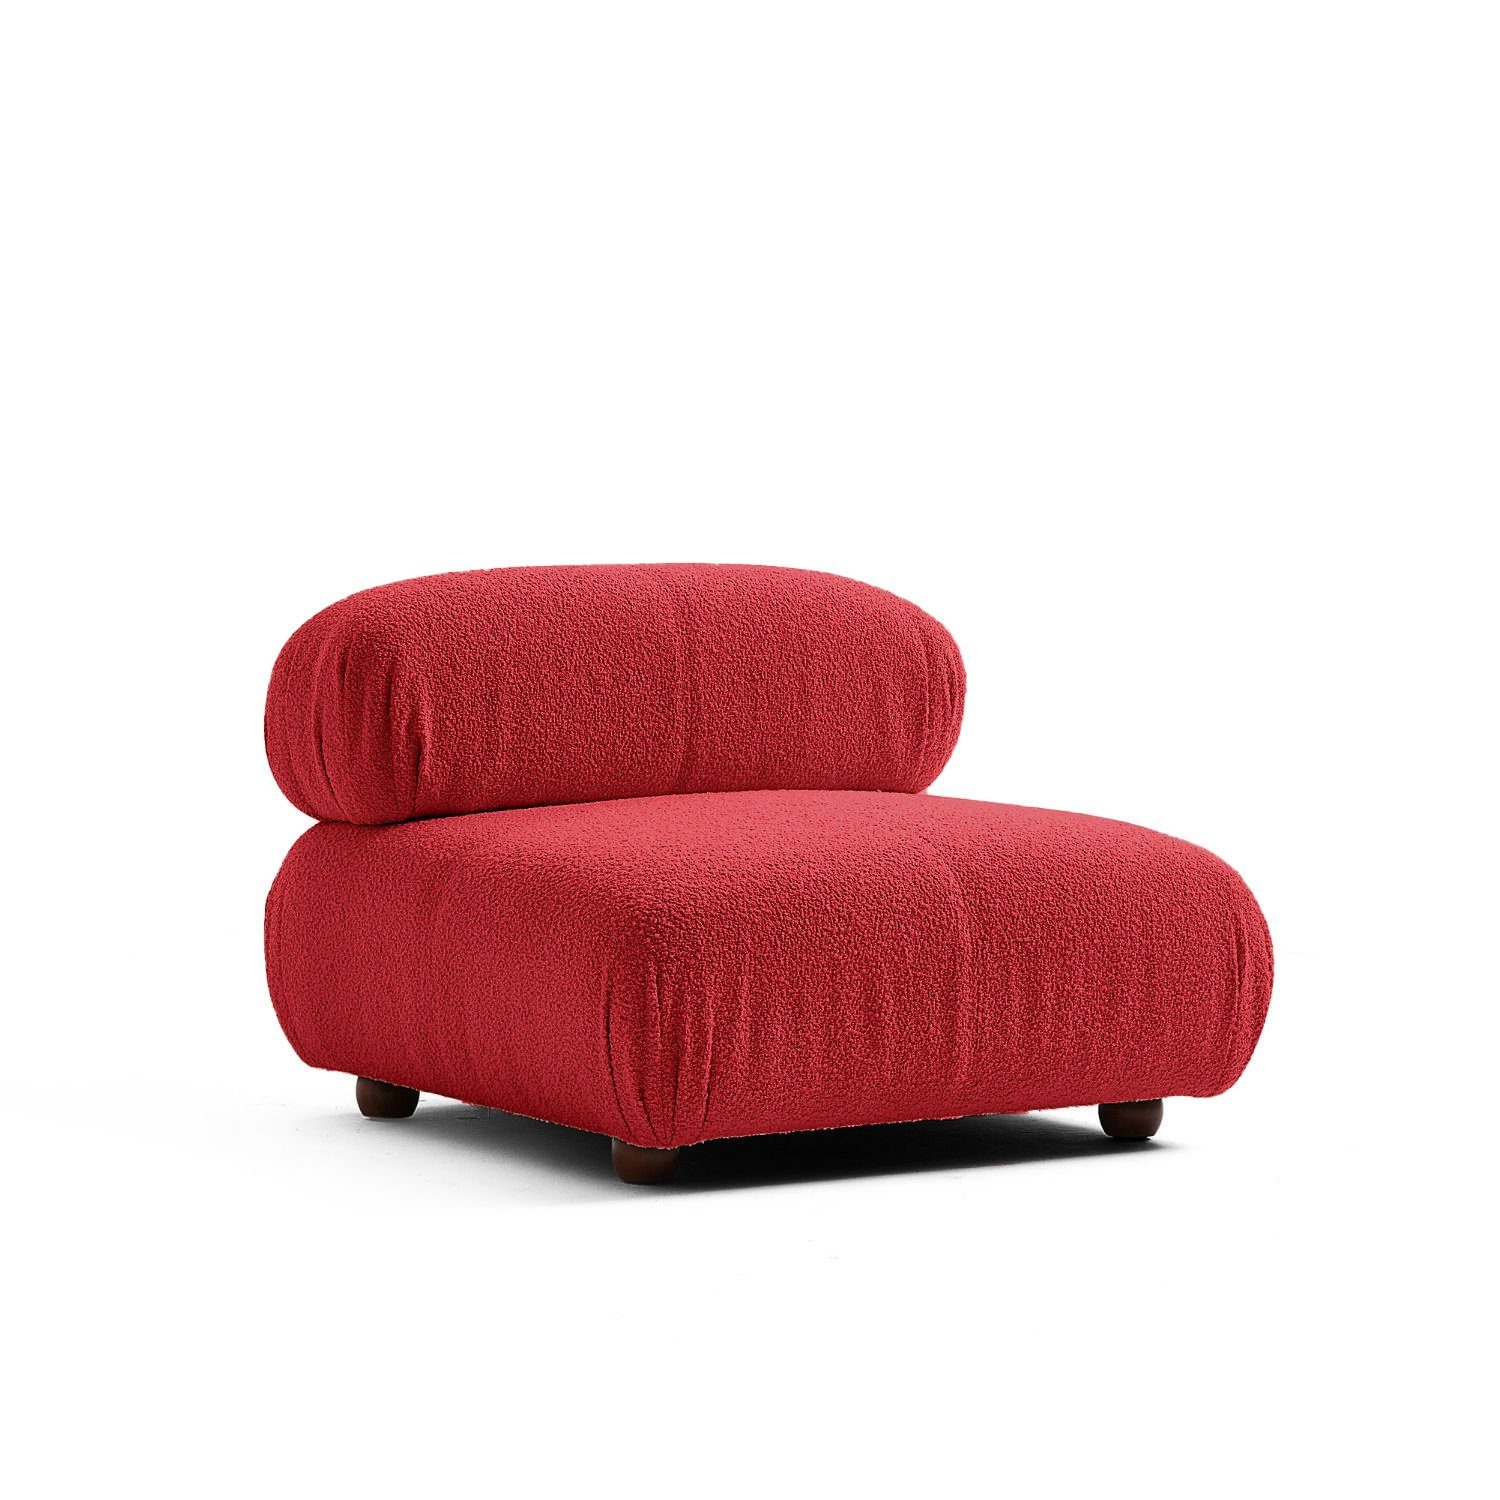 Touch me Sofa Knuffiges Sitzmöbel neueste Generation aus Komfortschaum Kirschrot-Lieferung und Aufbau im Preis enthalten!